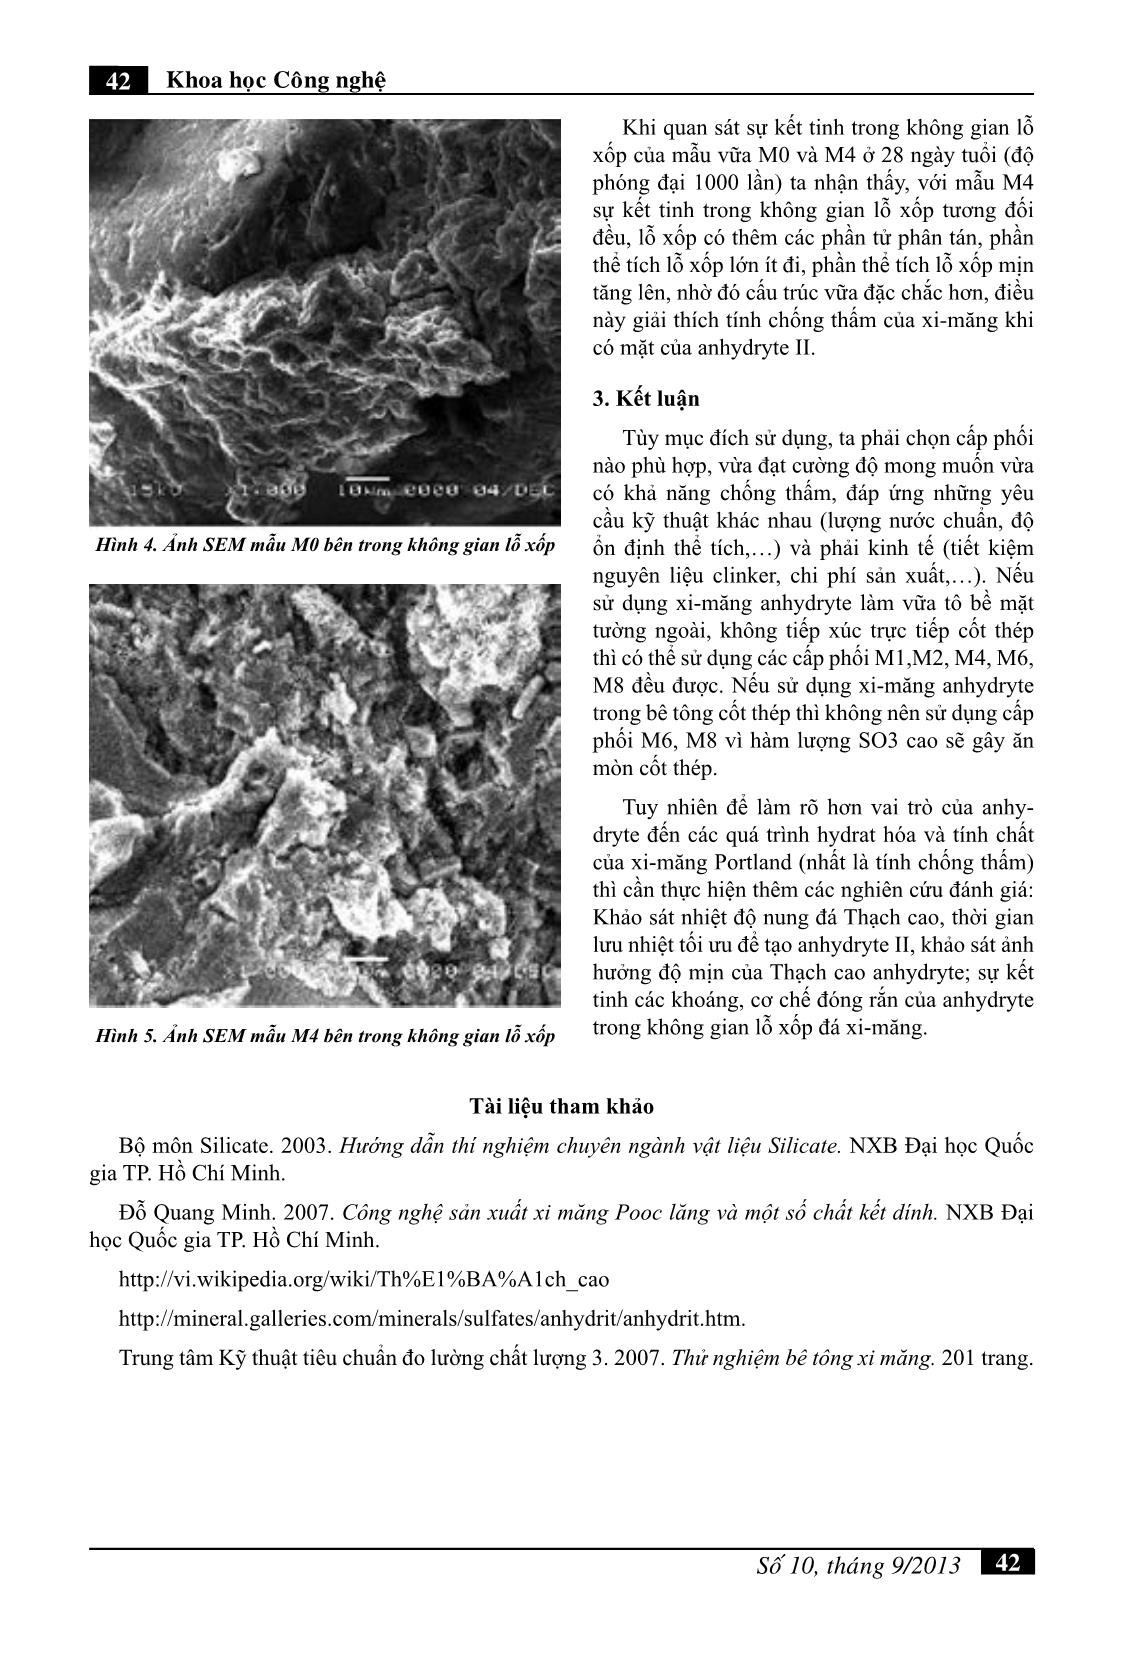 Khảo sát ảnh hưởng của thạch cao Anhydryte đến tính chất của xi măng Portland trang 5